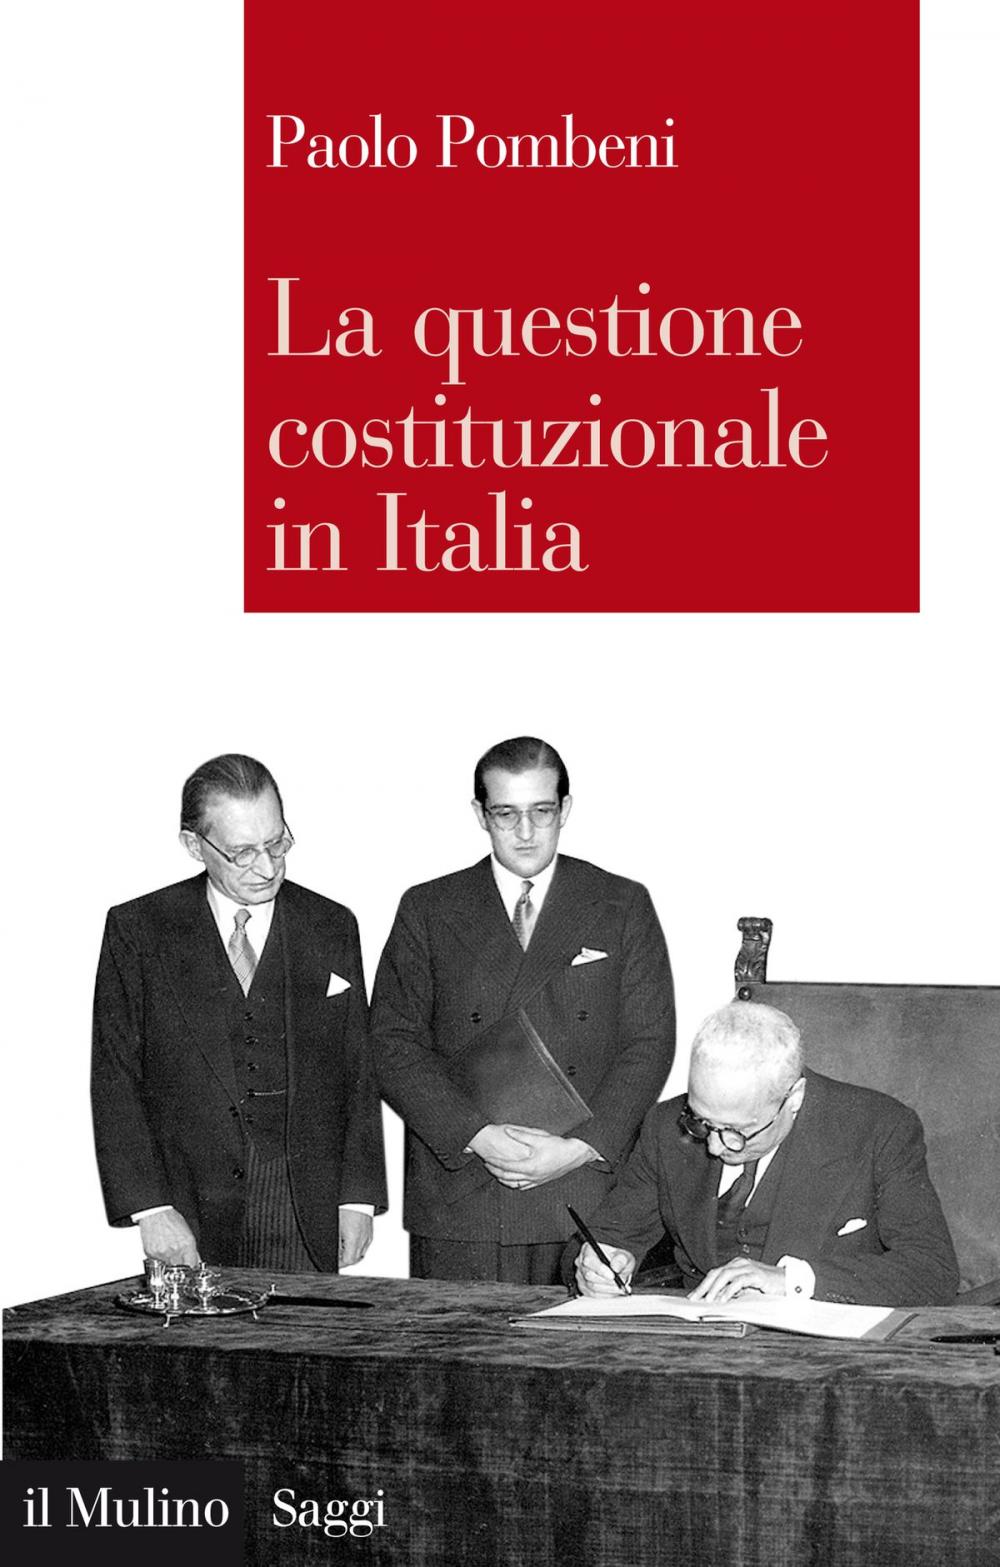 Big bigCover of La questione costituzionale in italia